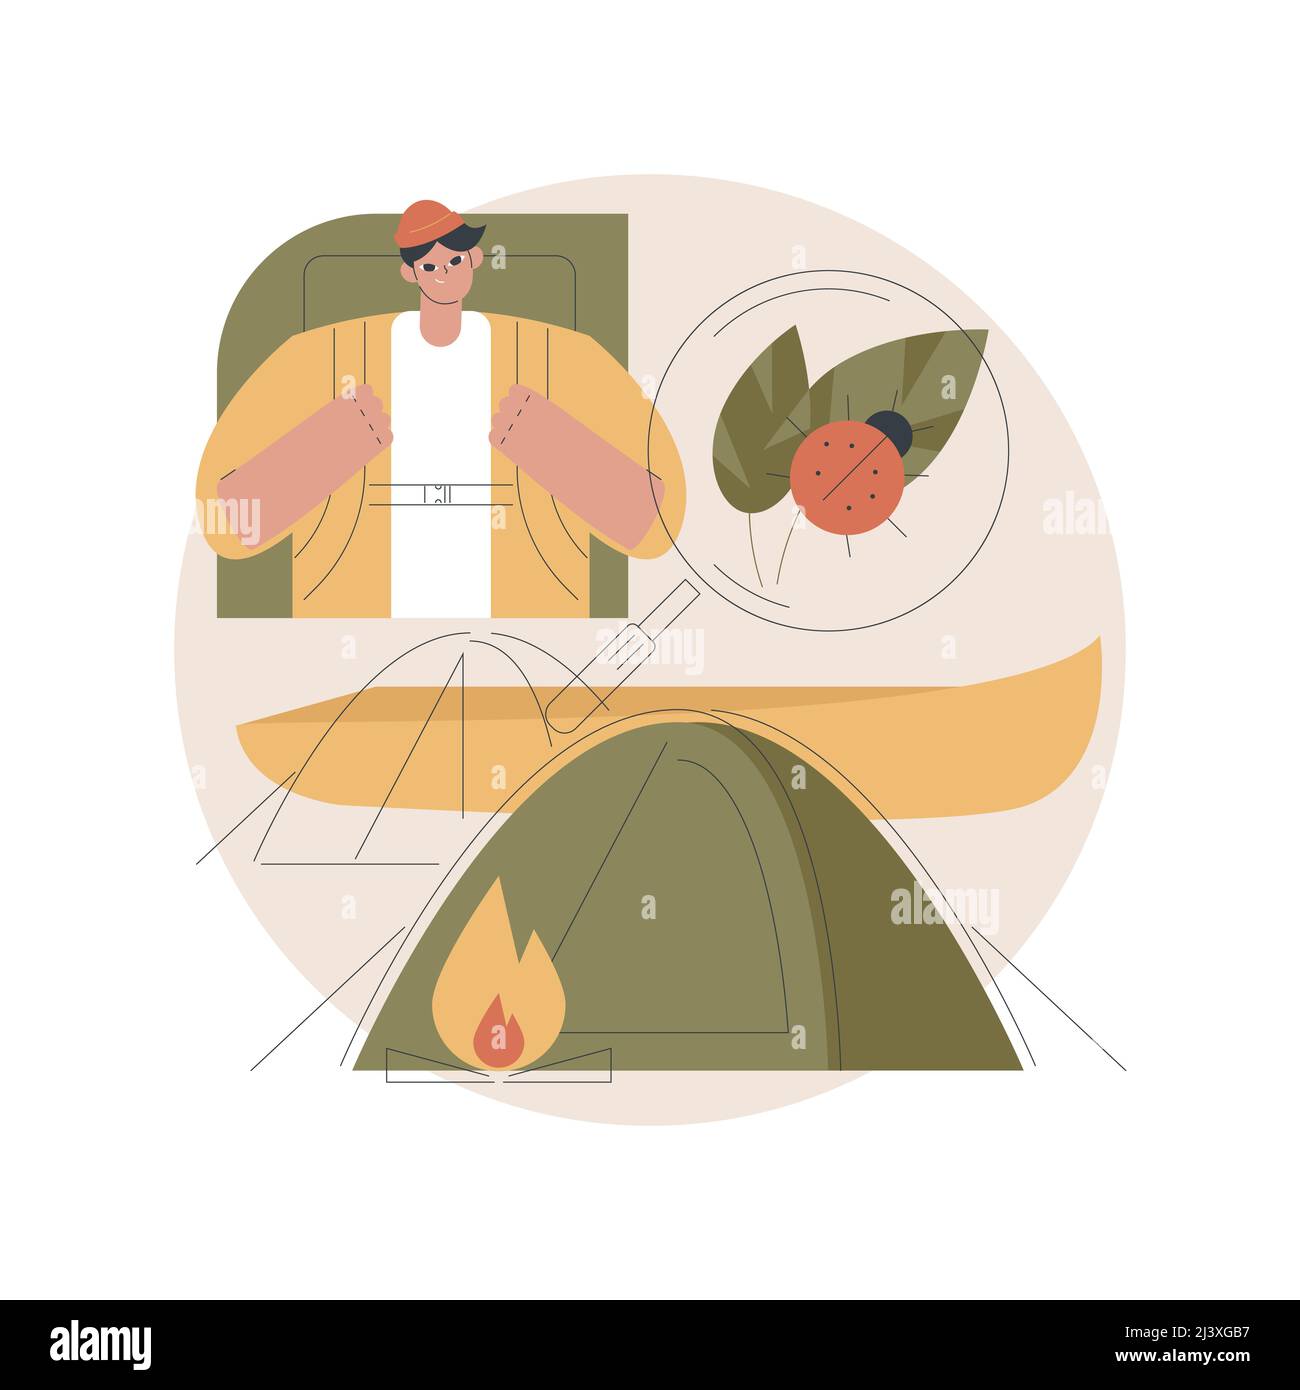 Sommerlager abstrakte Konzept Vektor Illustration. Sleepaway Camp, Urlaubszeit, Wandern und Kanufahren, Wissenschaft und Natur, Zelt und Lagerfeuer, hohe scho Stock Vektor